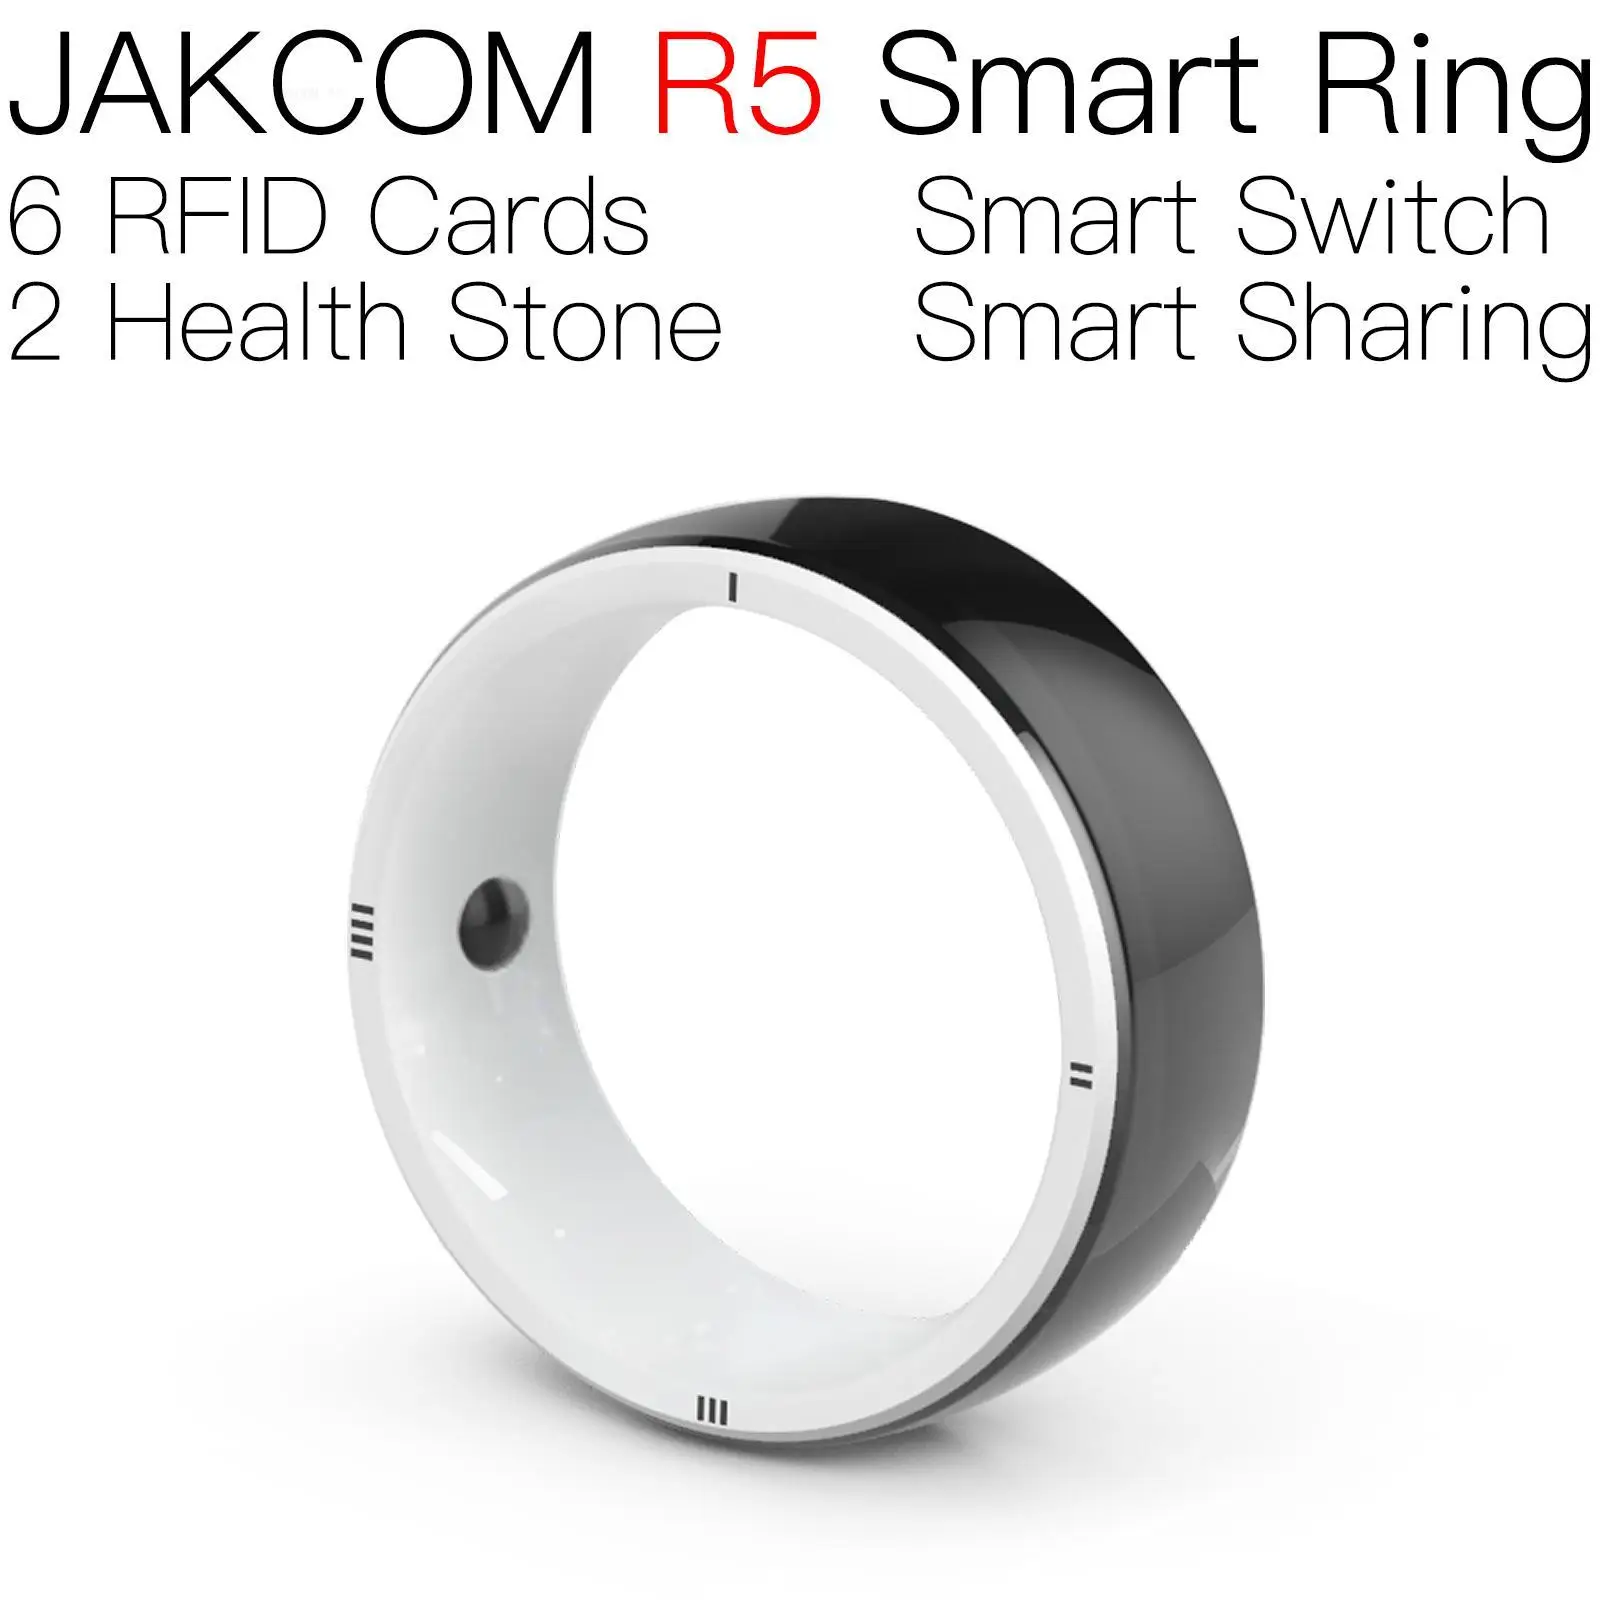 

Умное кольцо JAKCOM R5, лучше, чем система карт, стандартная Радиочастотная Идентификация, микро мини-чип, эксклюзивная перезаписываемая смарт-наклейка